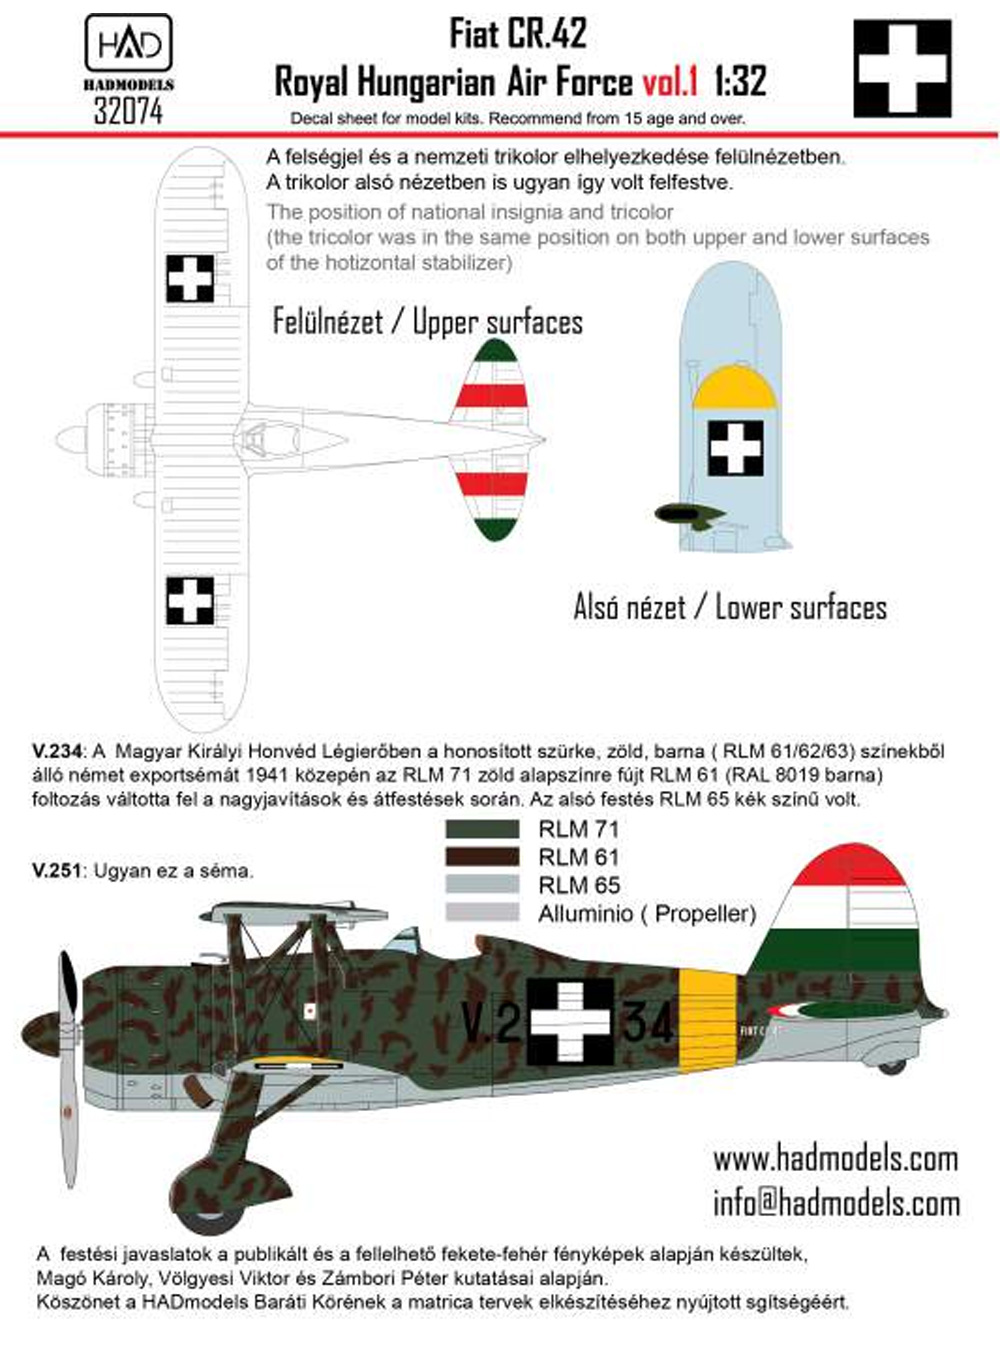 フィアット CR.42 王立ハンガリー空軍 vol.1 デカール デカール (HAD MODELS 1/32 デカール No.32074) 商品画像_2